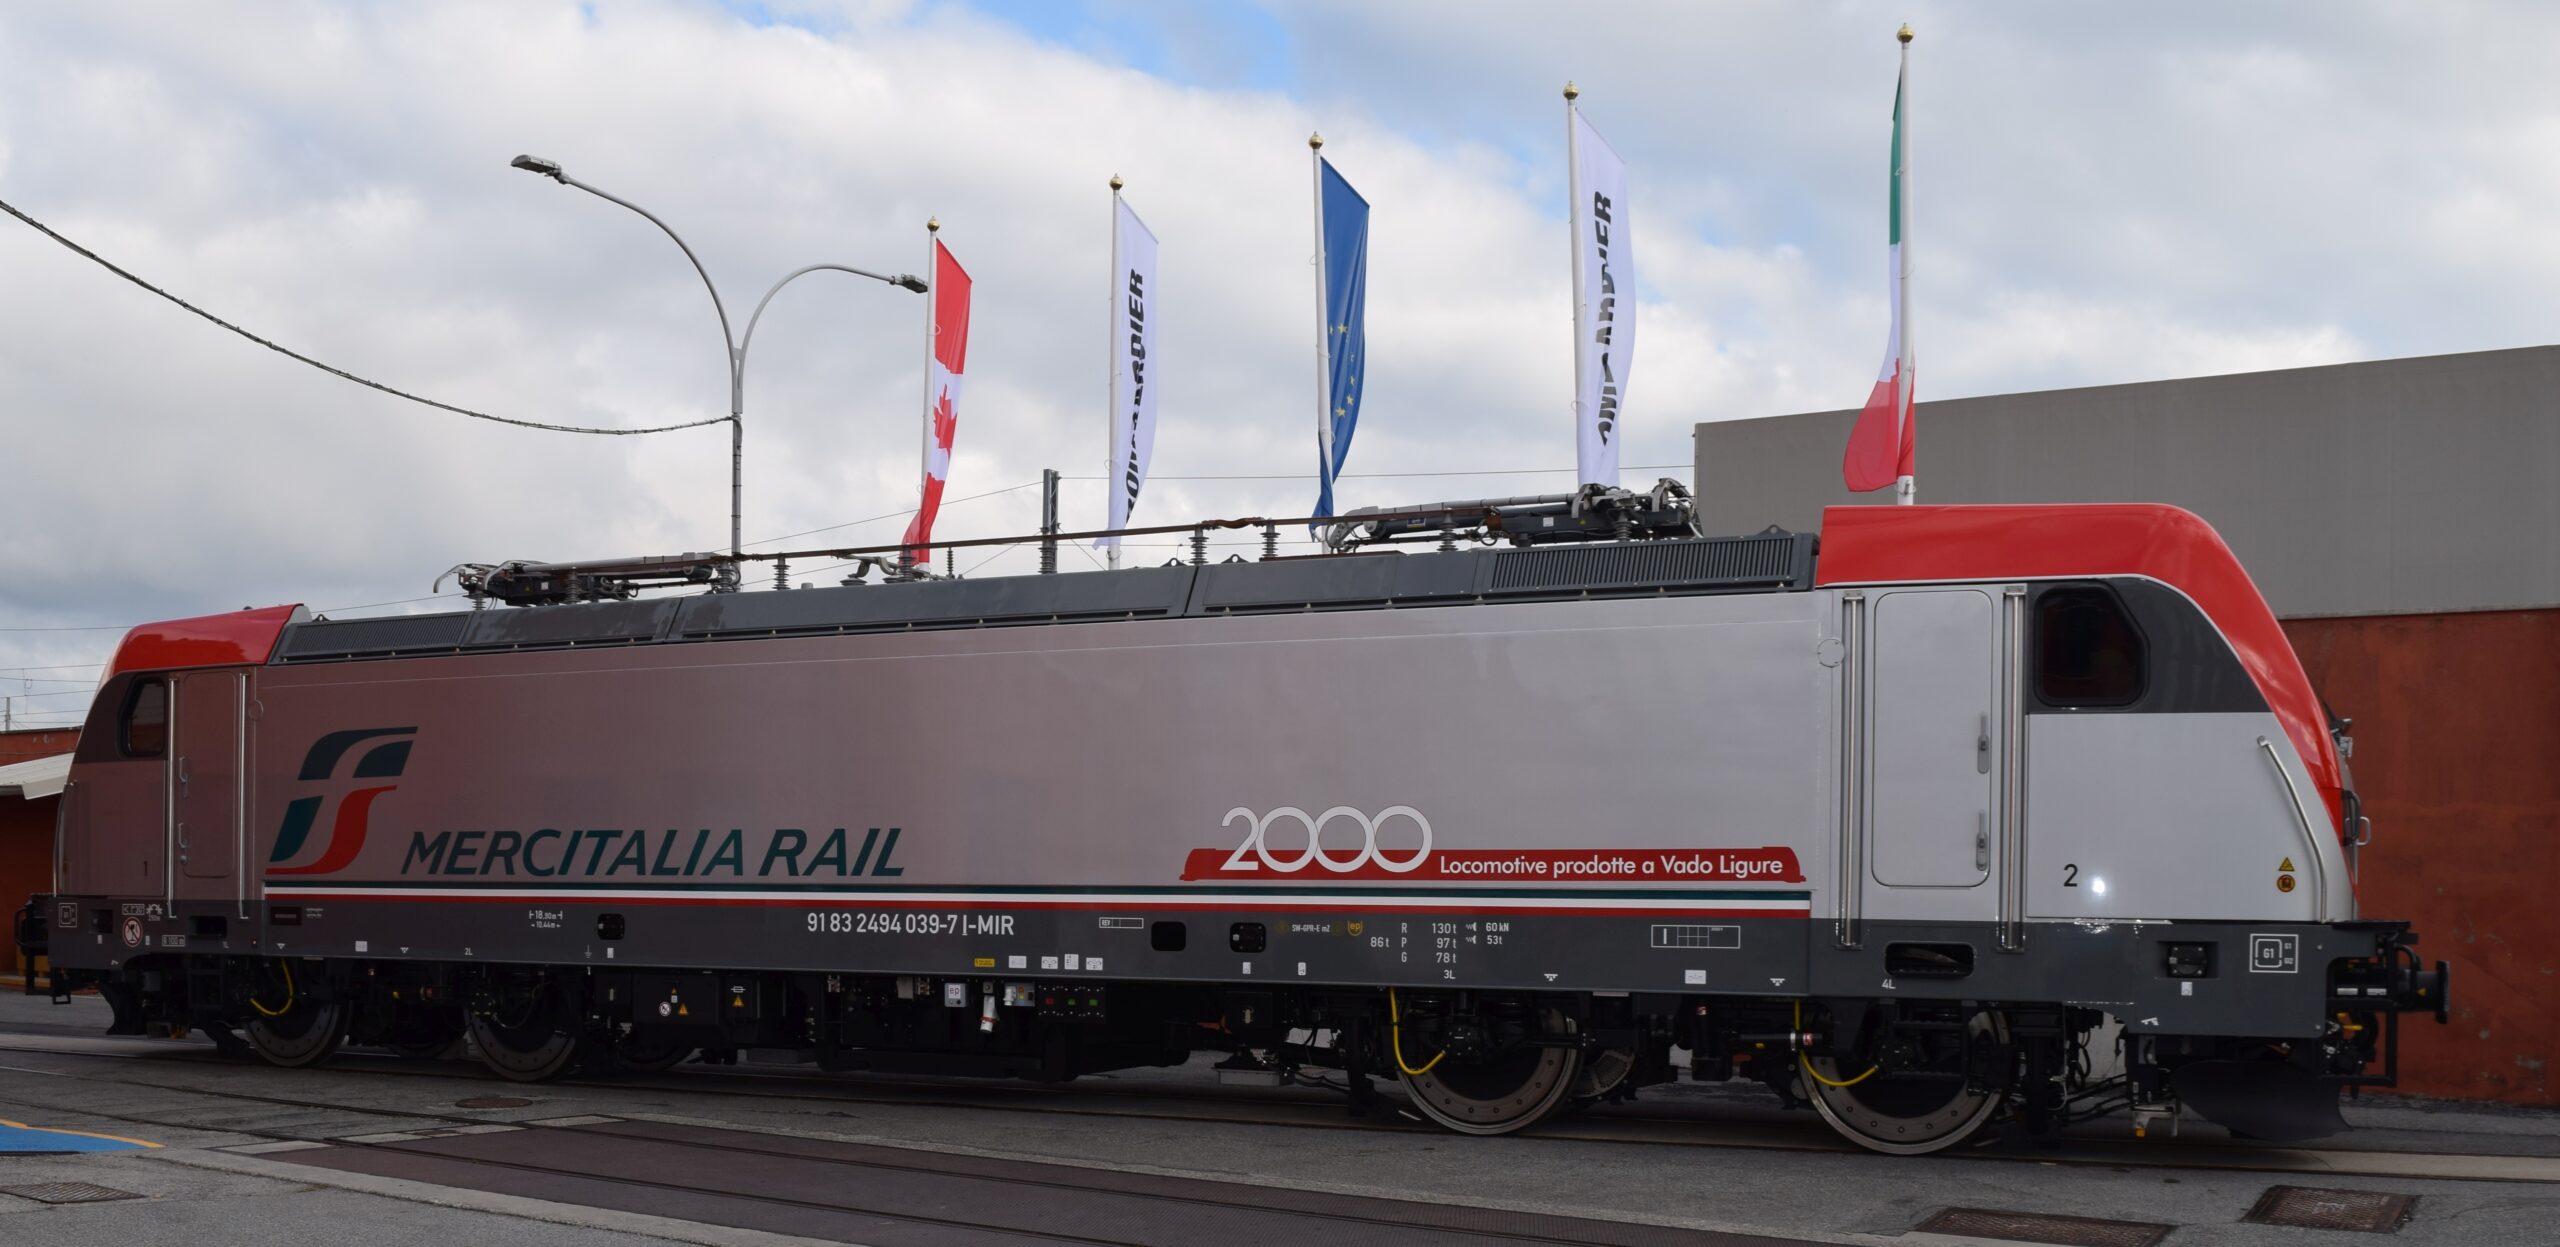 Bombardier presenta la duemillesima locomotiva prodotta durante il Family Day 2019